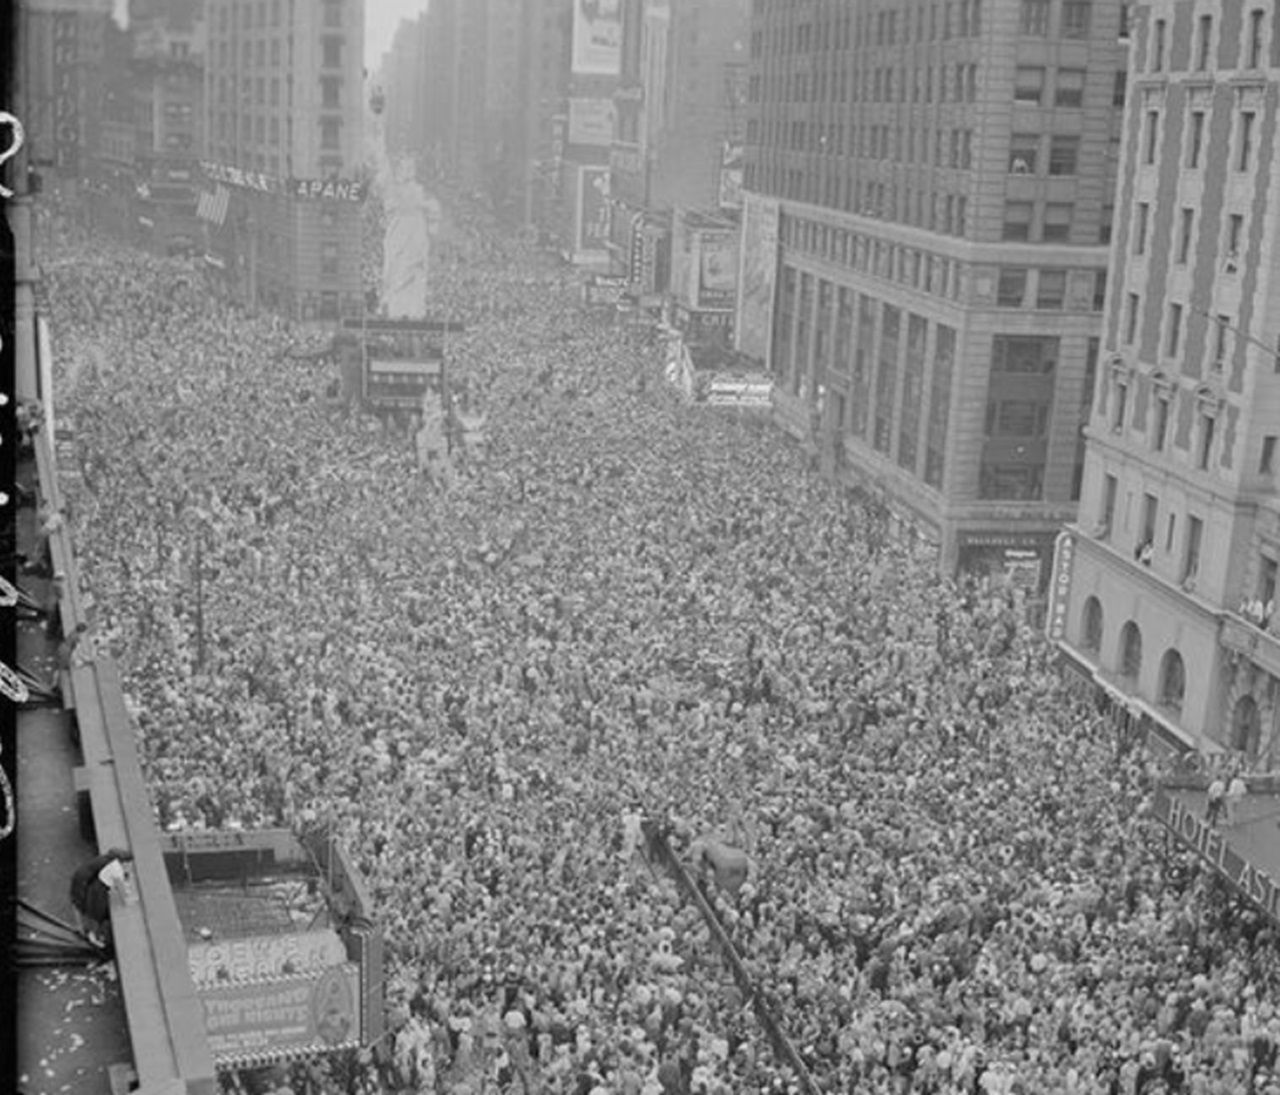 New York assiepata di folla festante per la resa tedesca dell'8 maggio 1945